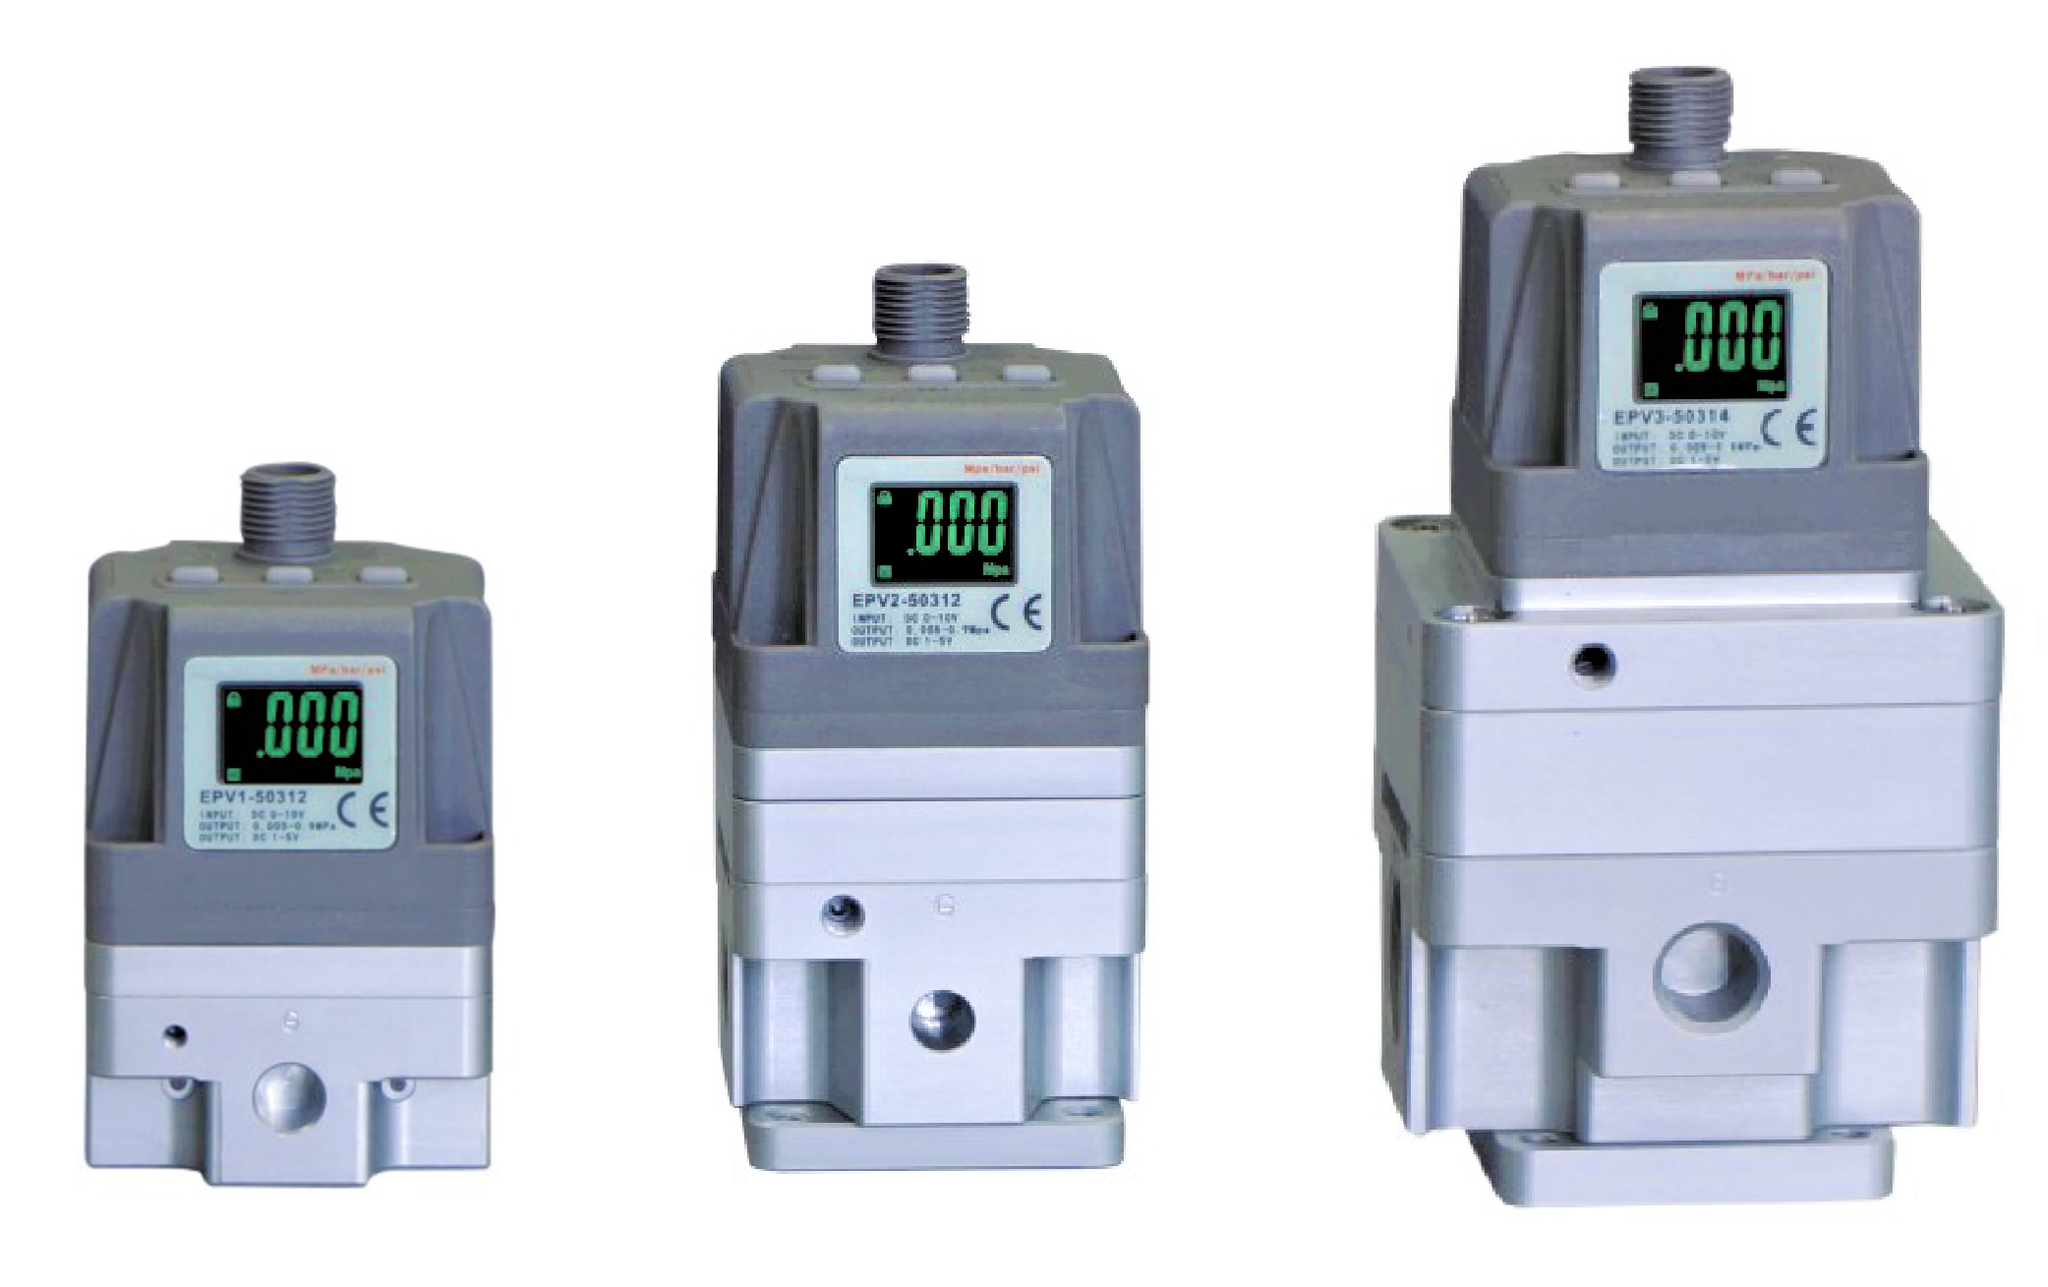 KOMPAUT - Regolatori di pressione proporzionali a controllo elettronico.